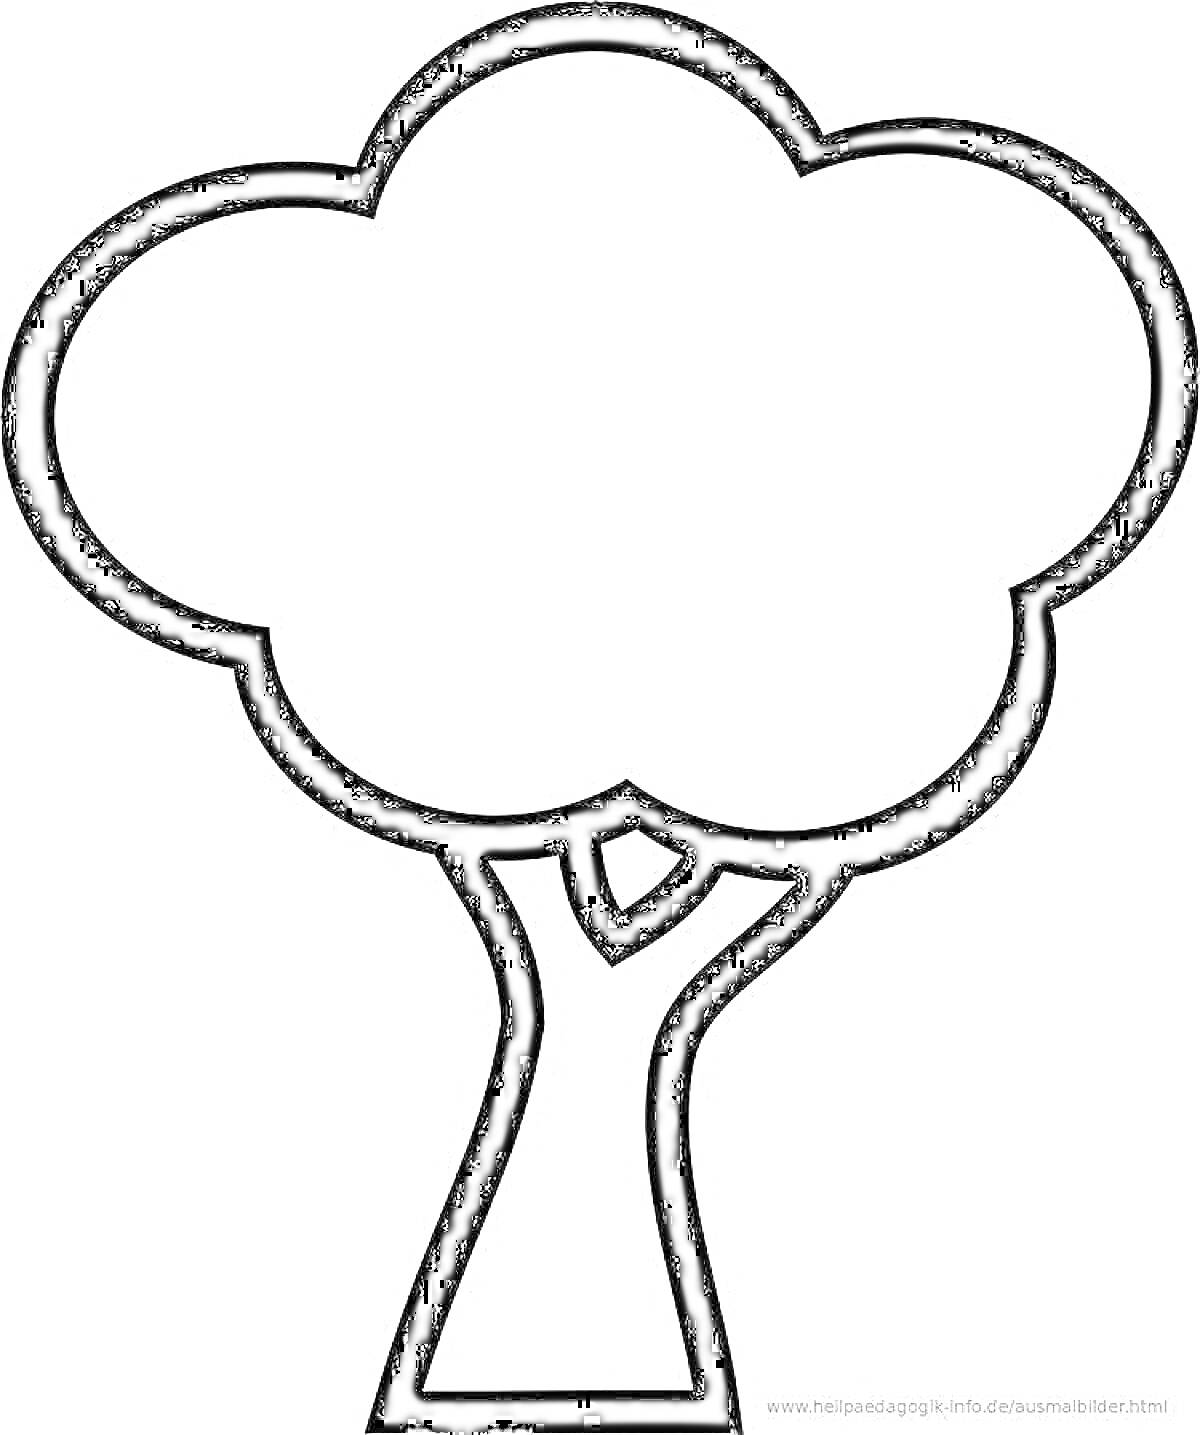 Дерево для раскрашивания (контурное изображение дерева с кроной и стволом)